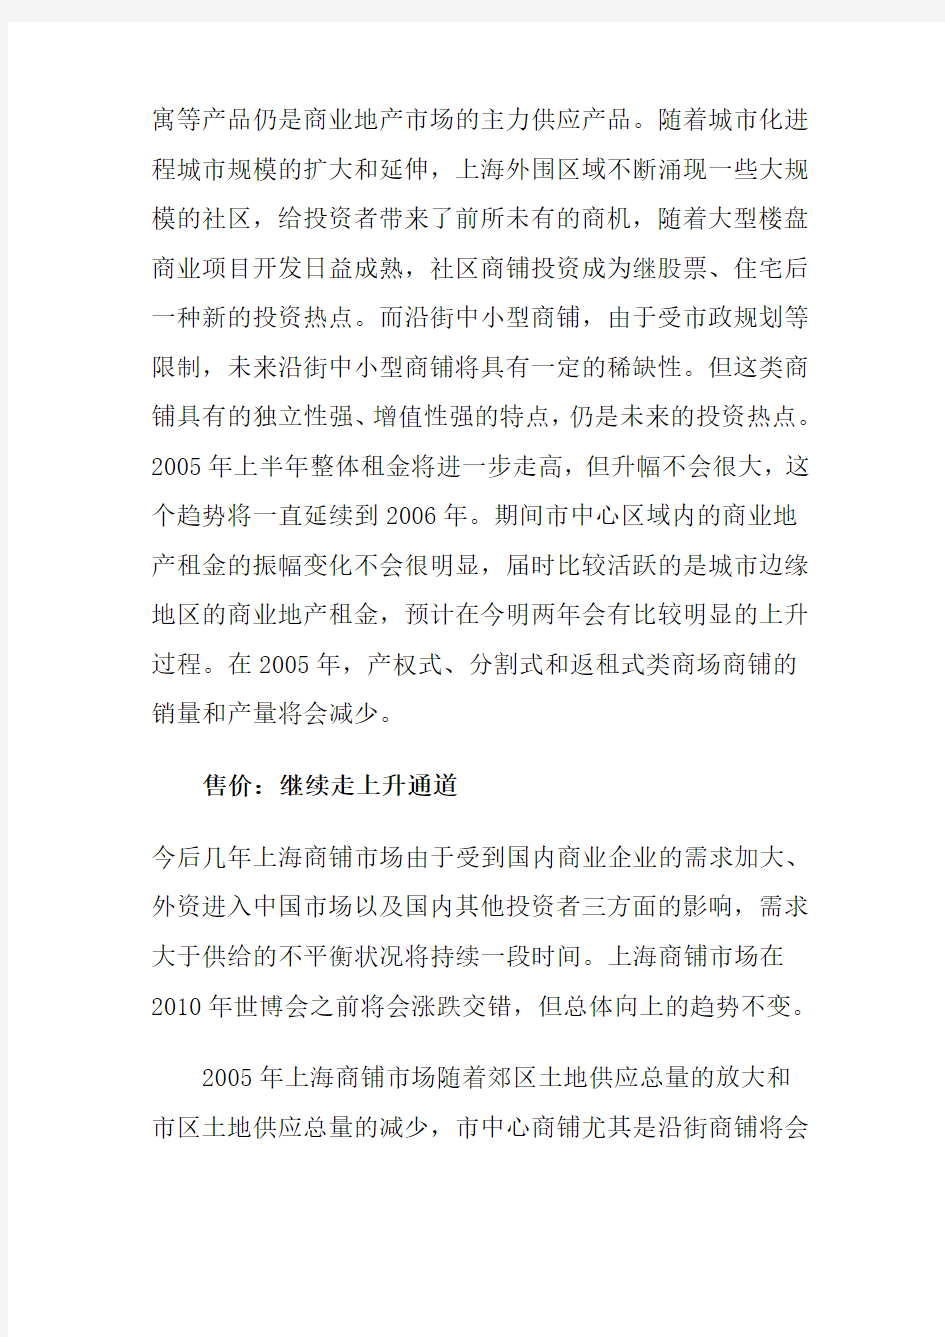 上海商铺租金分析报告书